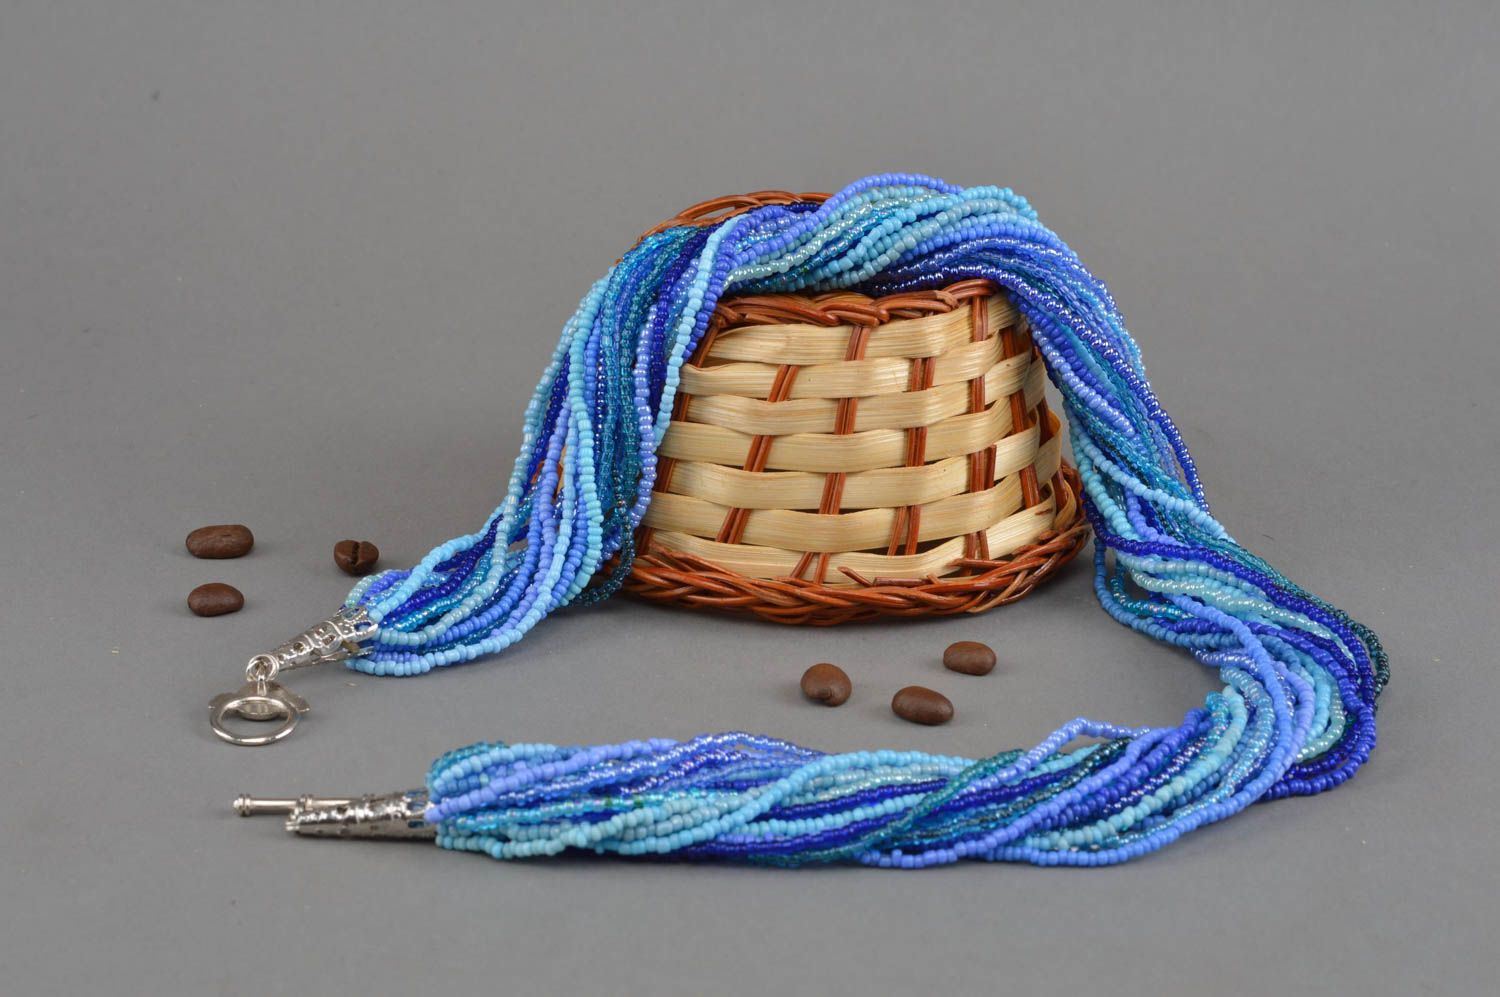 Ожерелье из бисера ручной работы нежное воздушное в голубых тонах авторское фото 1